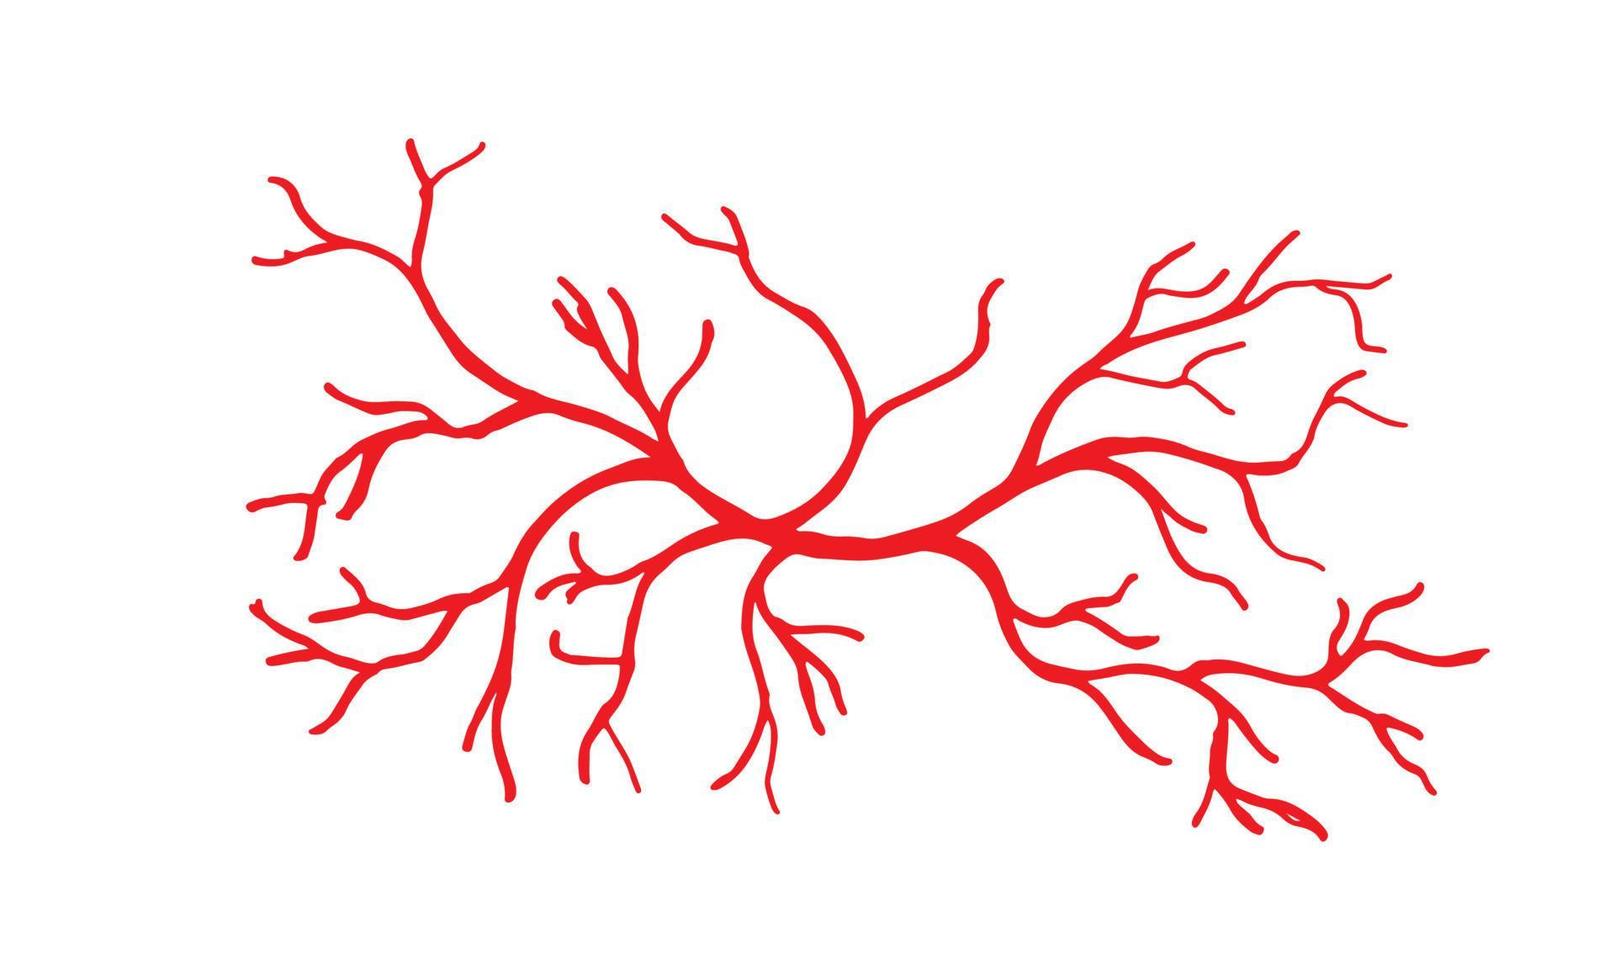 ilustração de veias e artérias humanas vetor